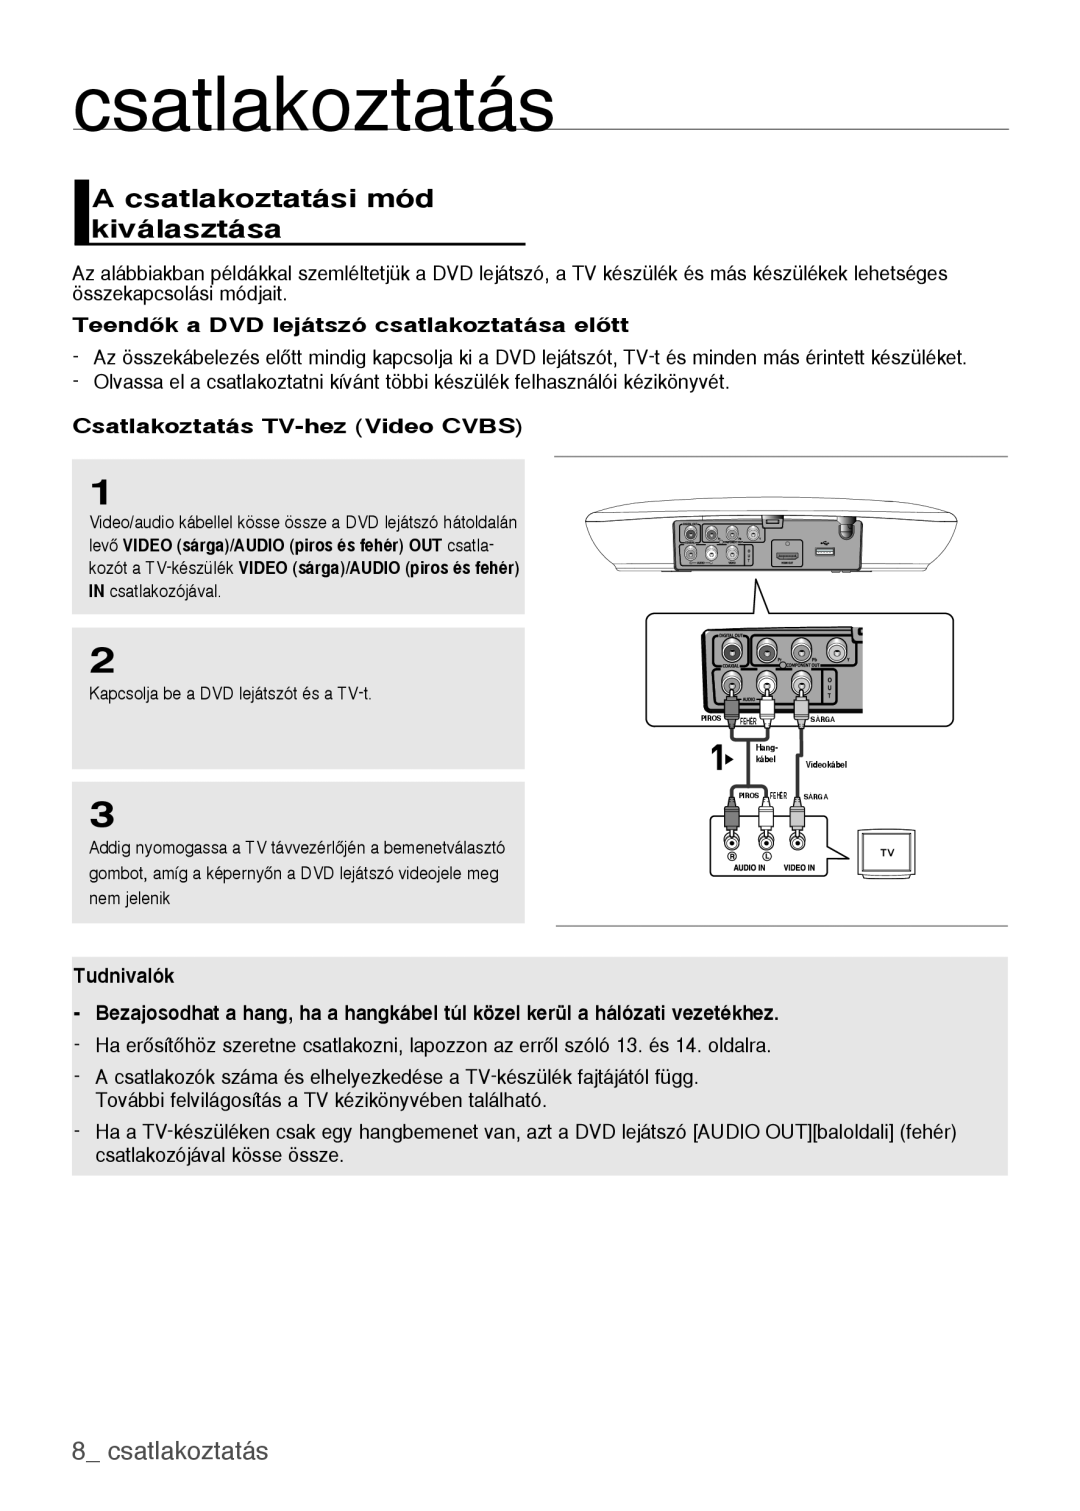 Samsung DVD-H1080/EDC manual A csatlakoztatási mód kiválasztása,  csatlakoztatás, Csatlakoztatás TV-hez Video CVBS 